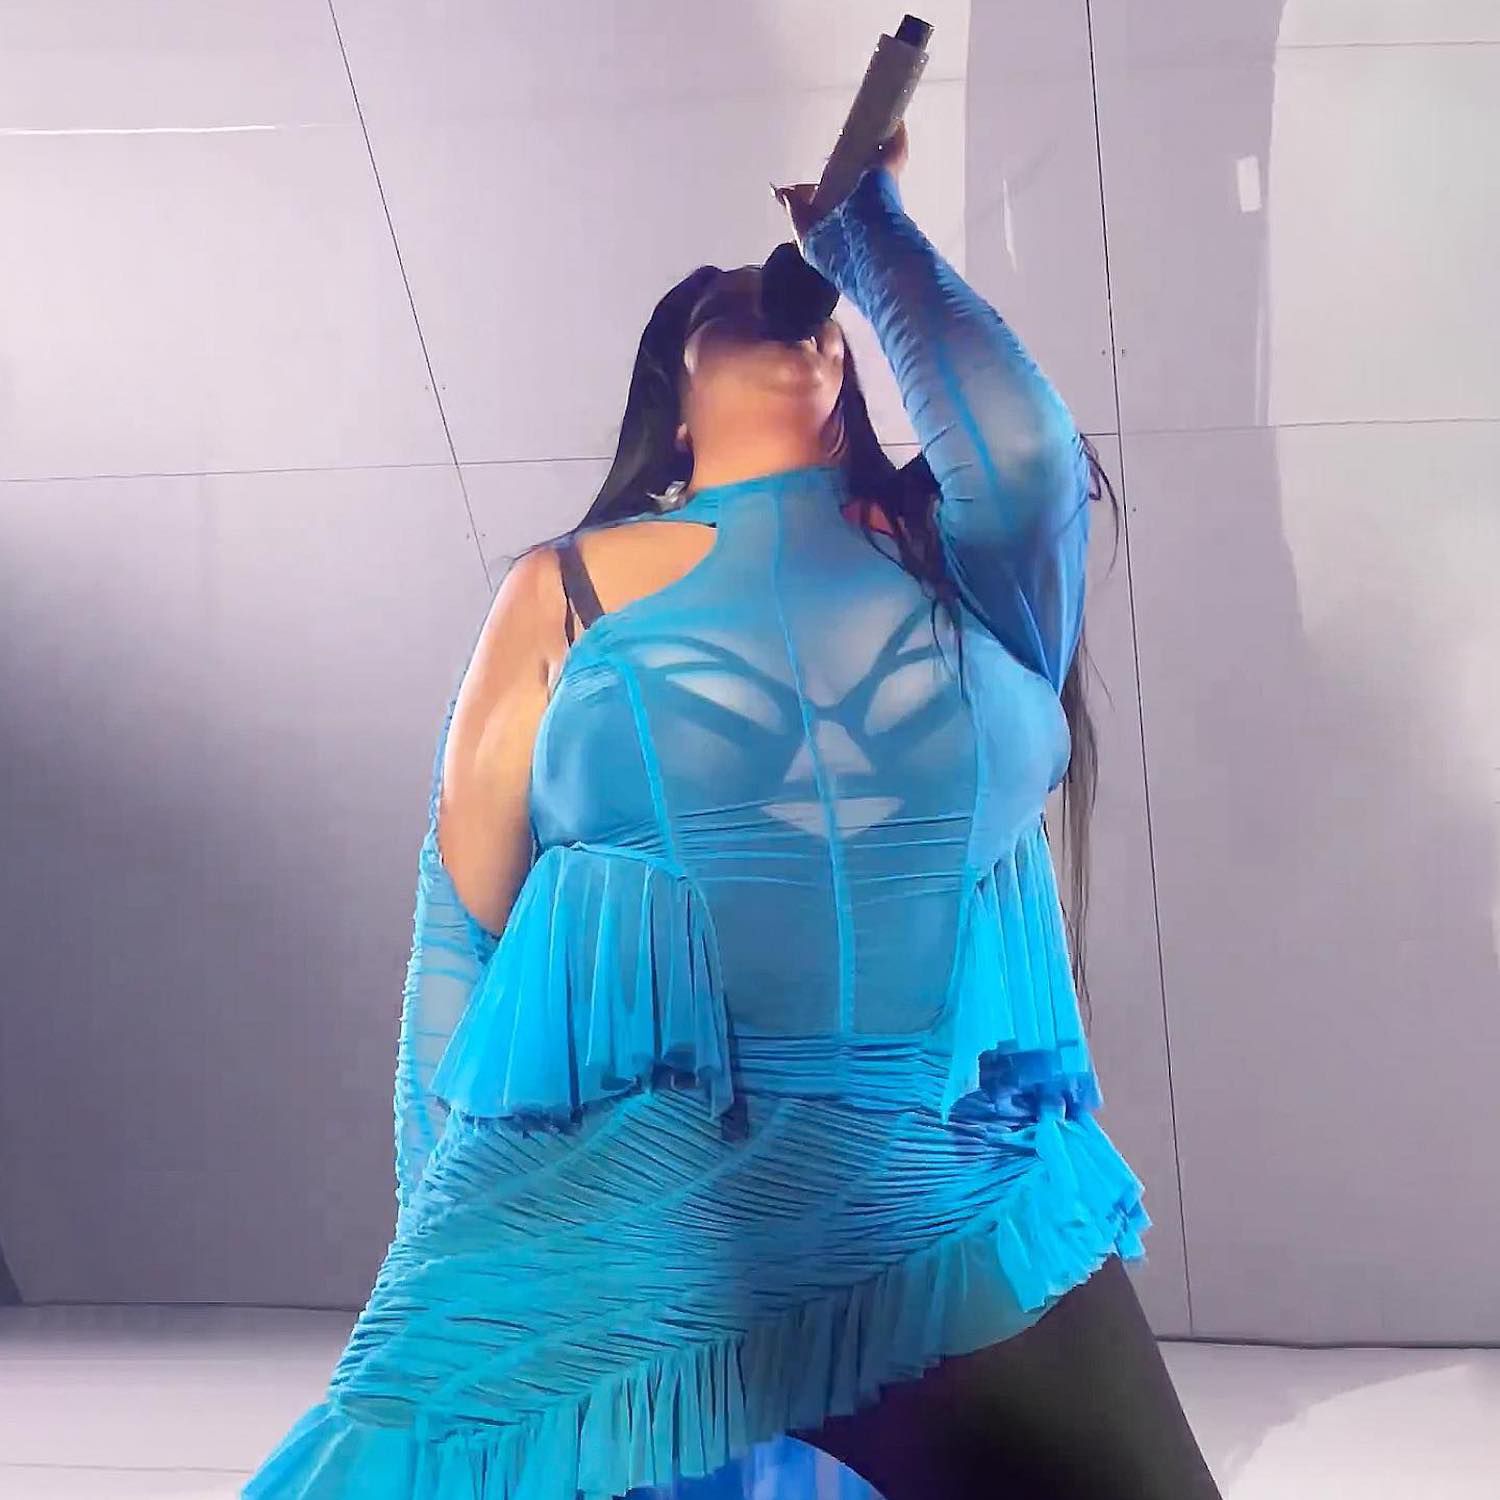 Artista de música shygirl aparece em um vestido azul com babados e corpo preto de estáster manas